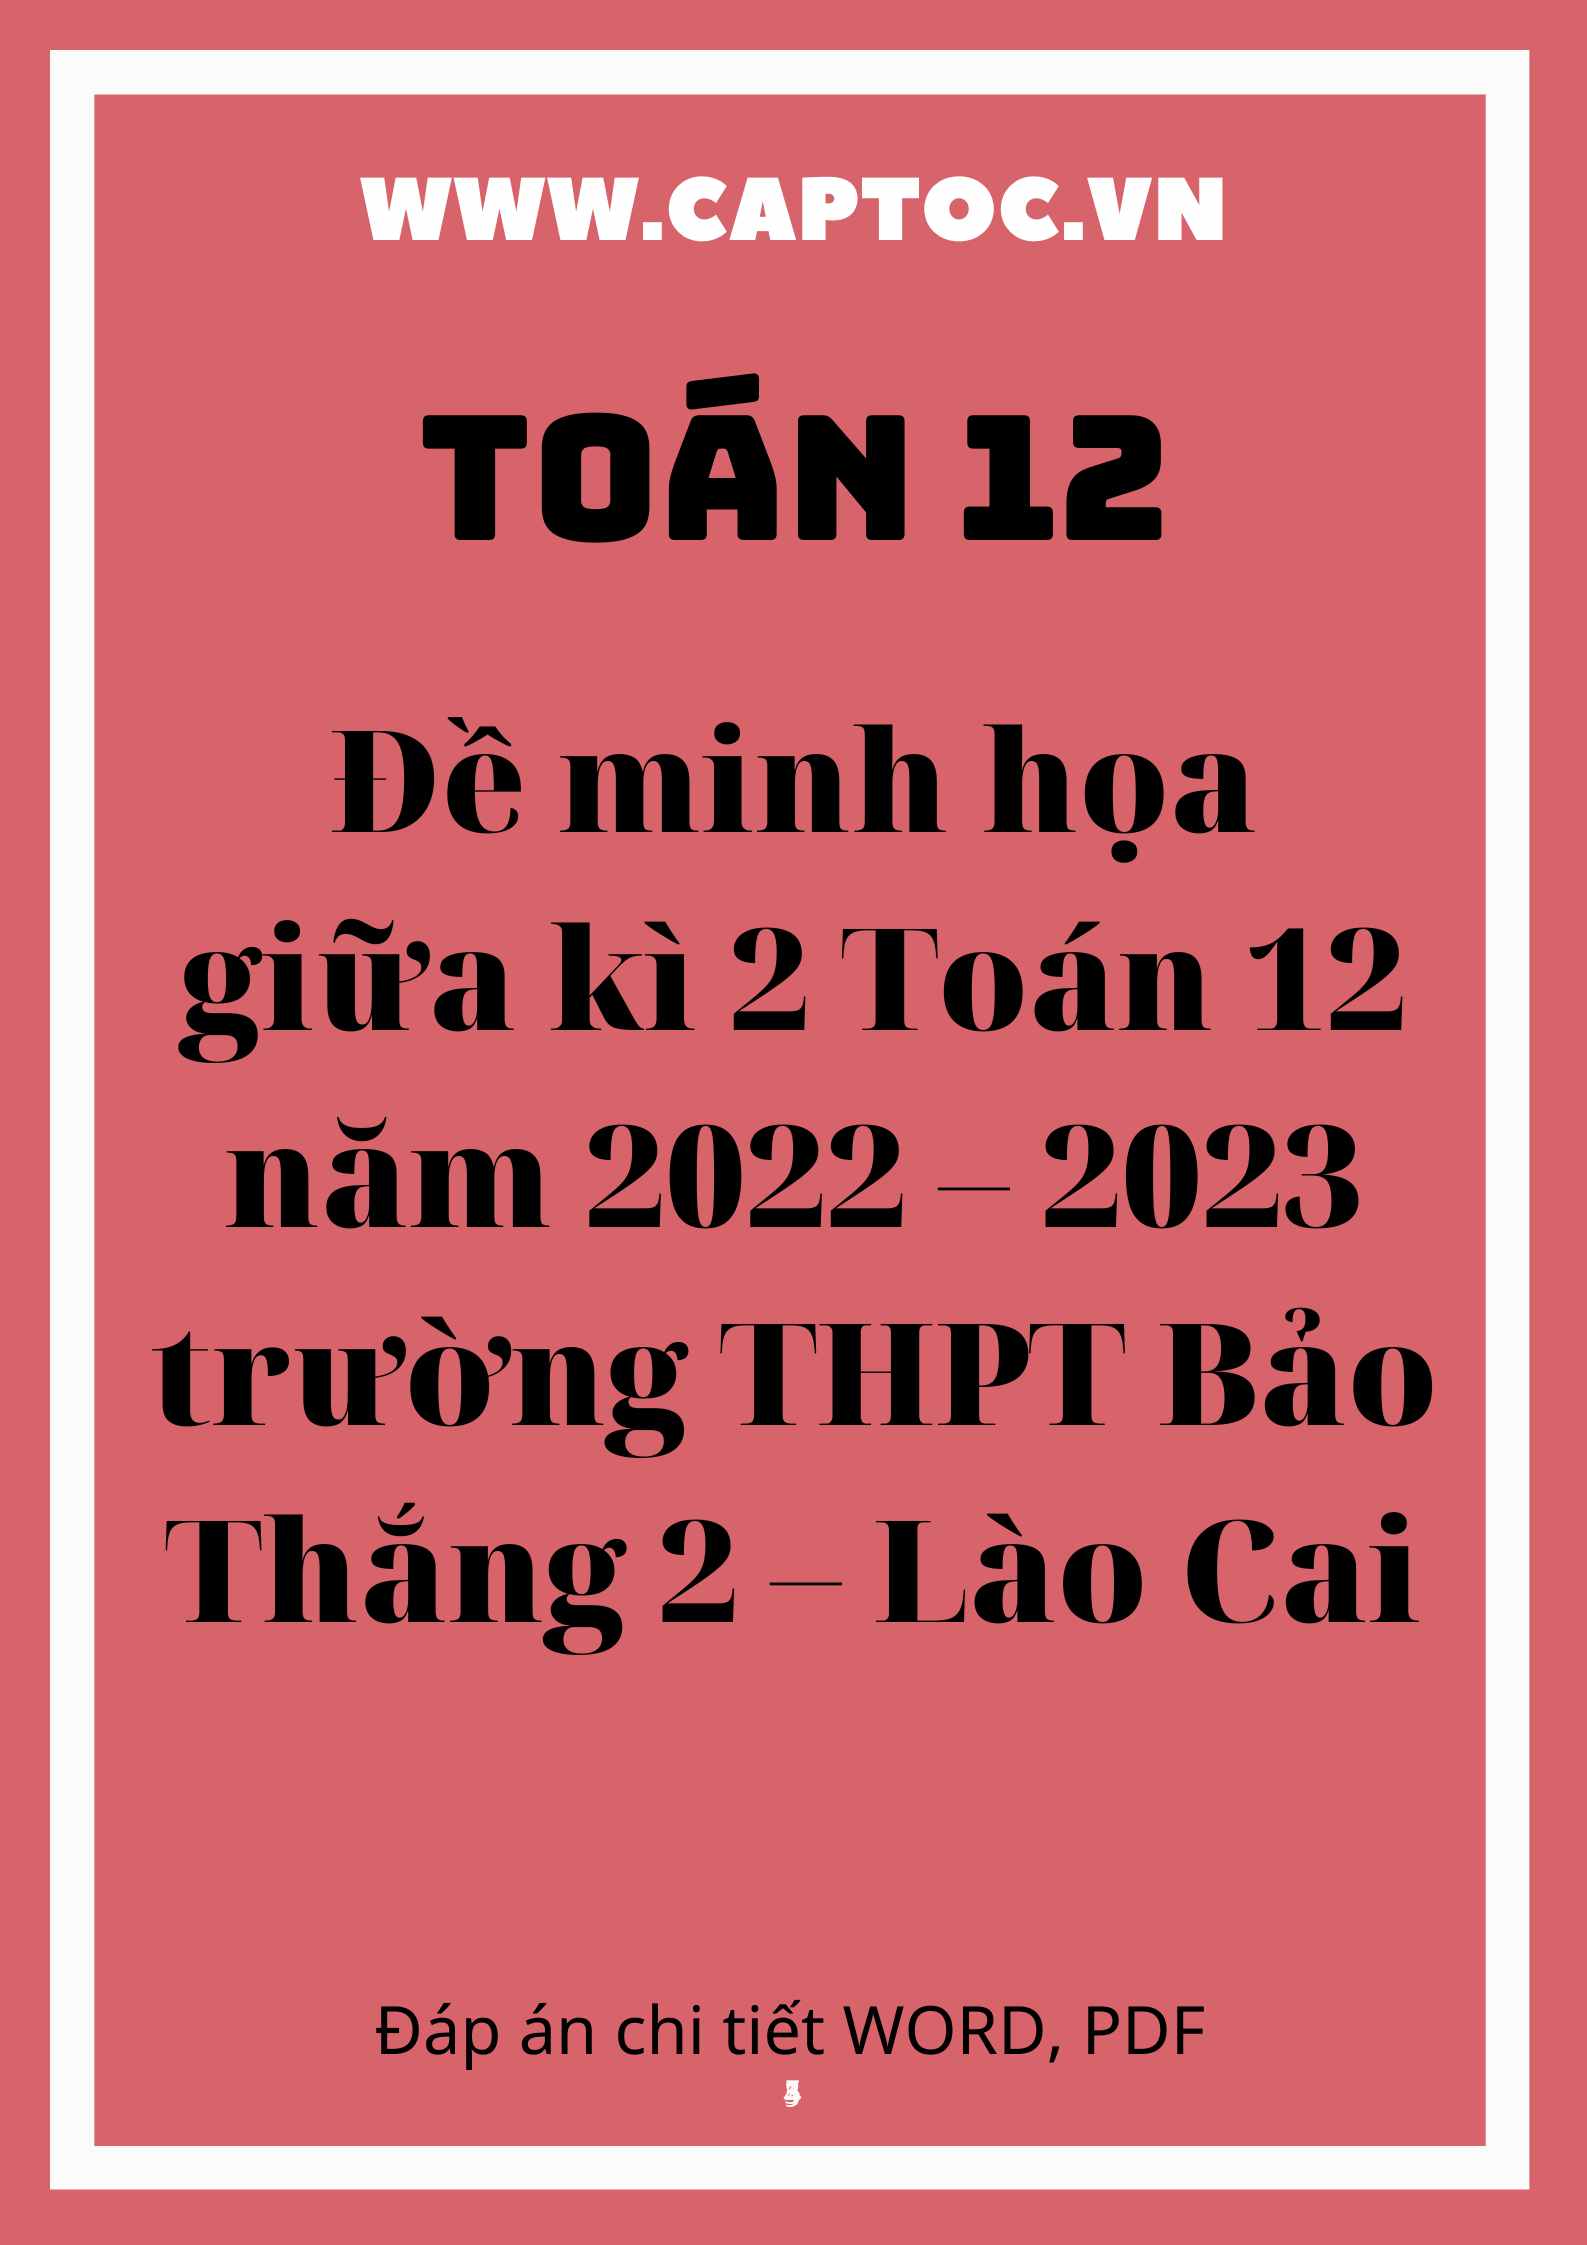 Đề minh họa giữa kì 2 Toán 12 năm 2022 – 2023 trường THPT Bảo Thắng 2 – Lào Cai